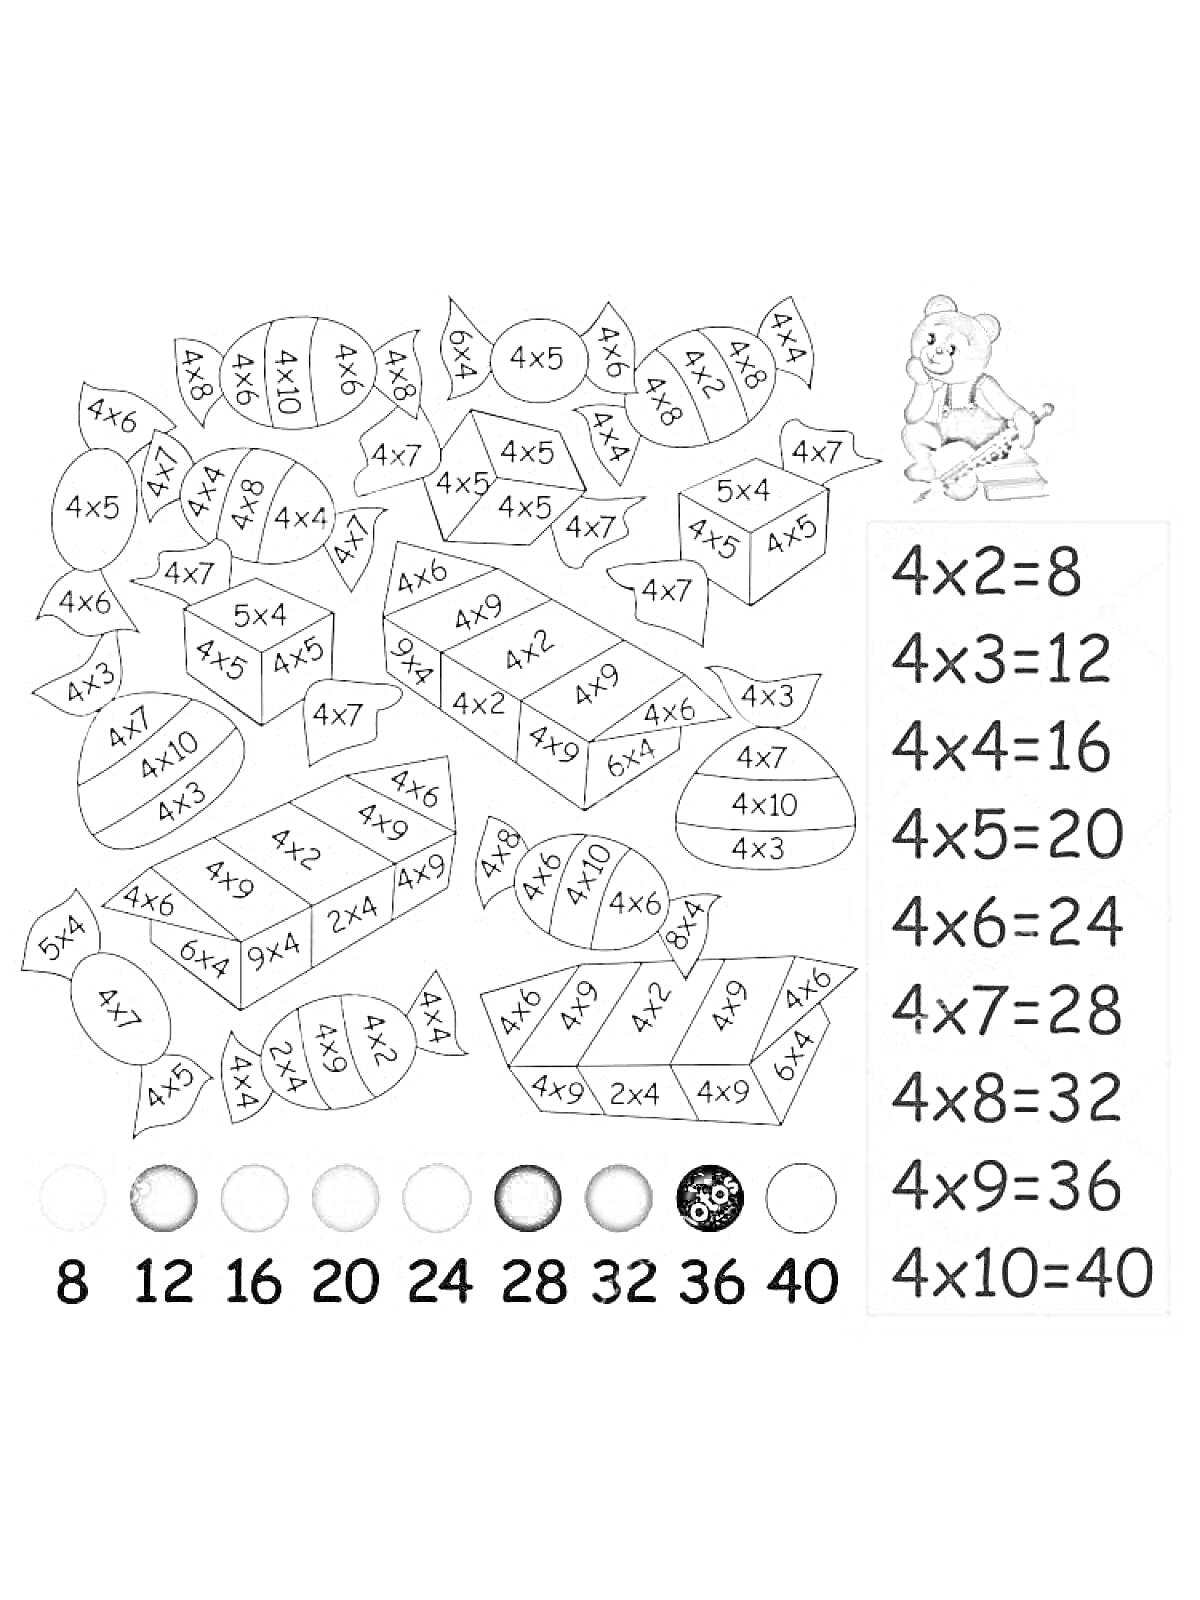 Раскраска Раскраска с таблицей умножения на 4, рисунок конфет, медвежонок, цветовая схема